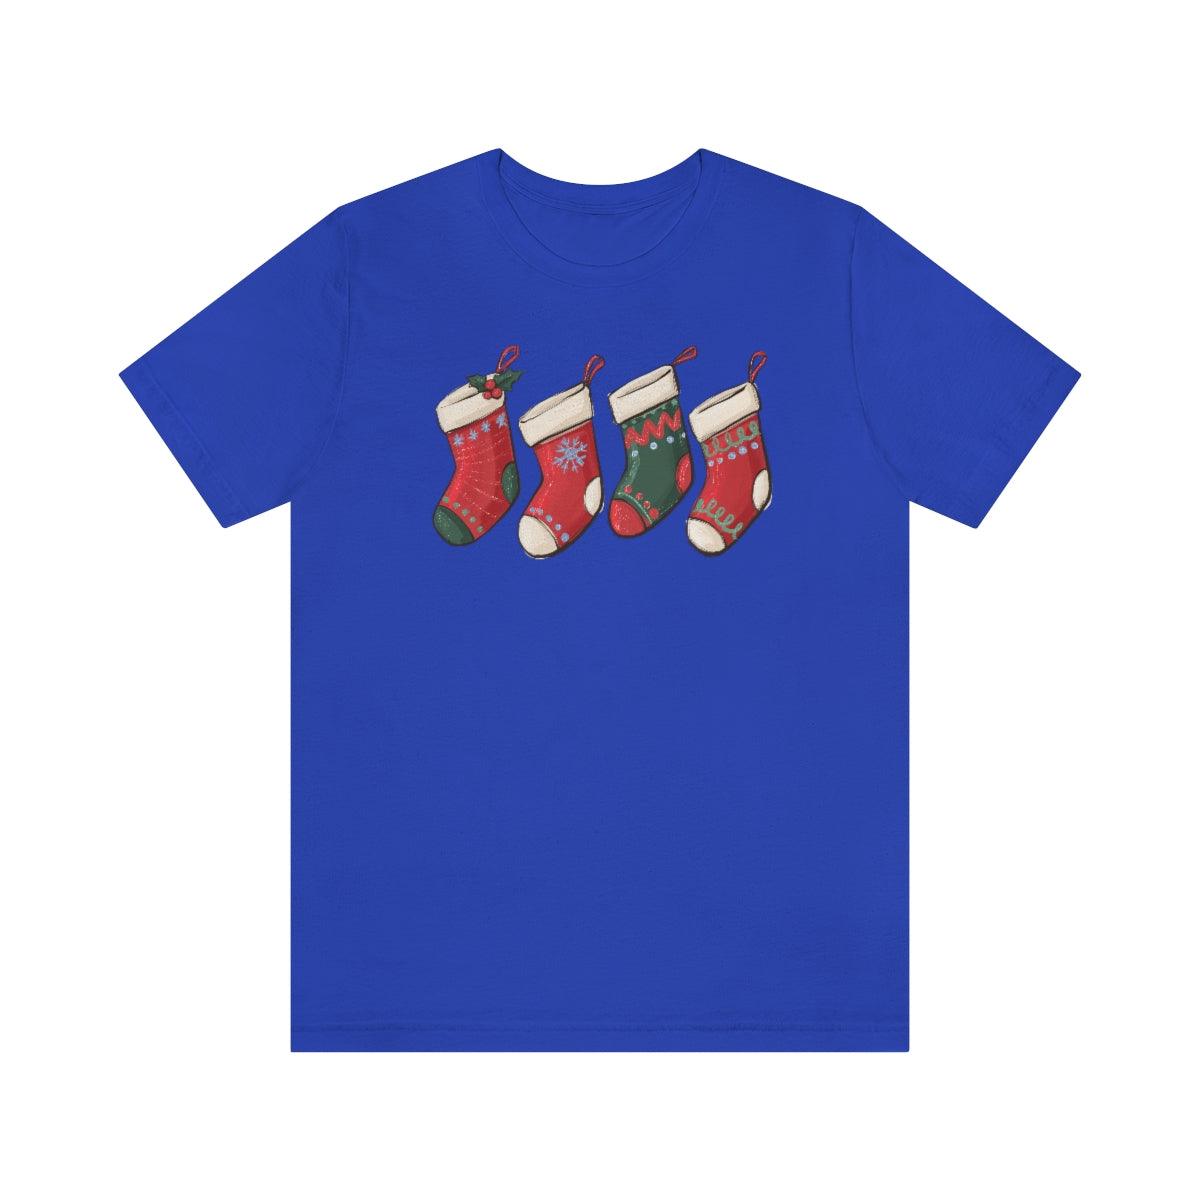 Christmas Stockings Christmas Shirt Short Sleeve Tee